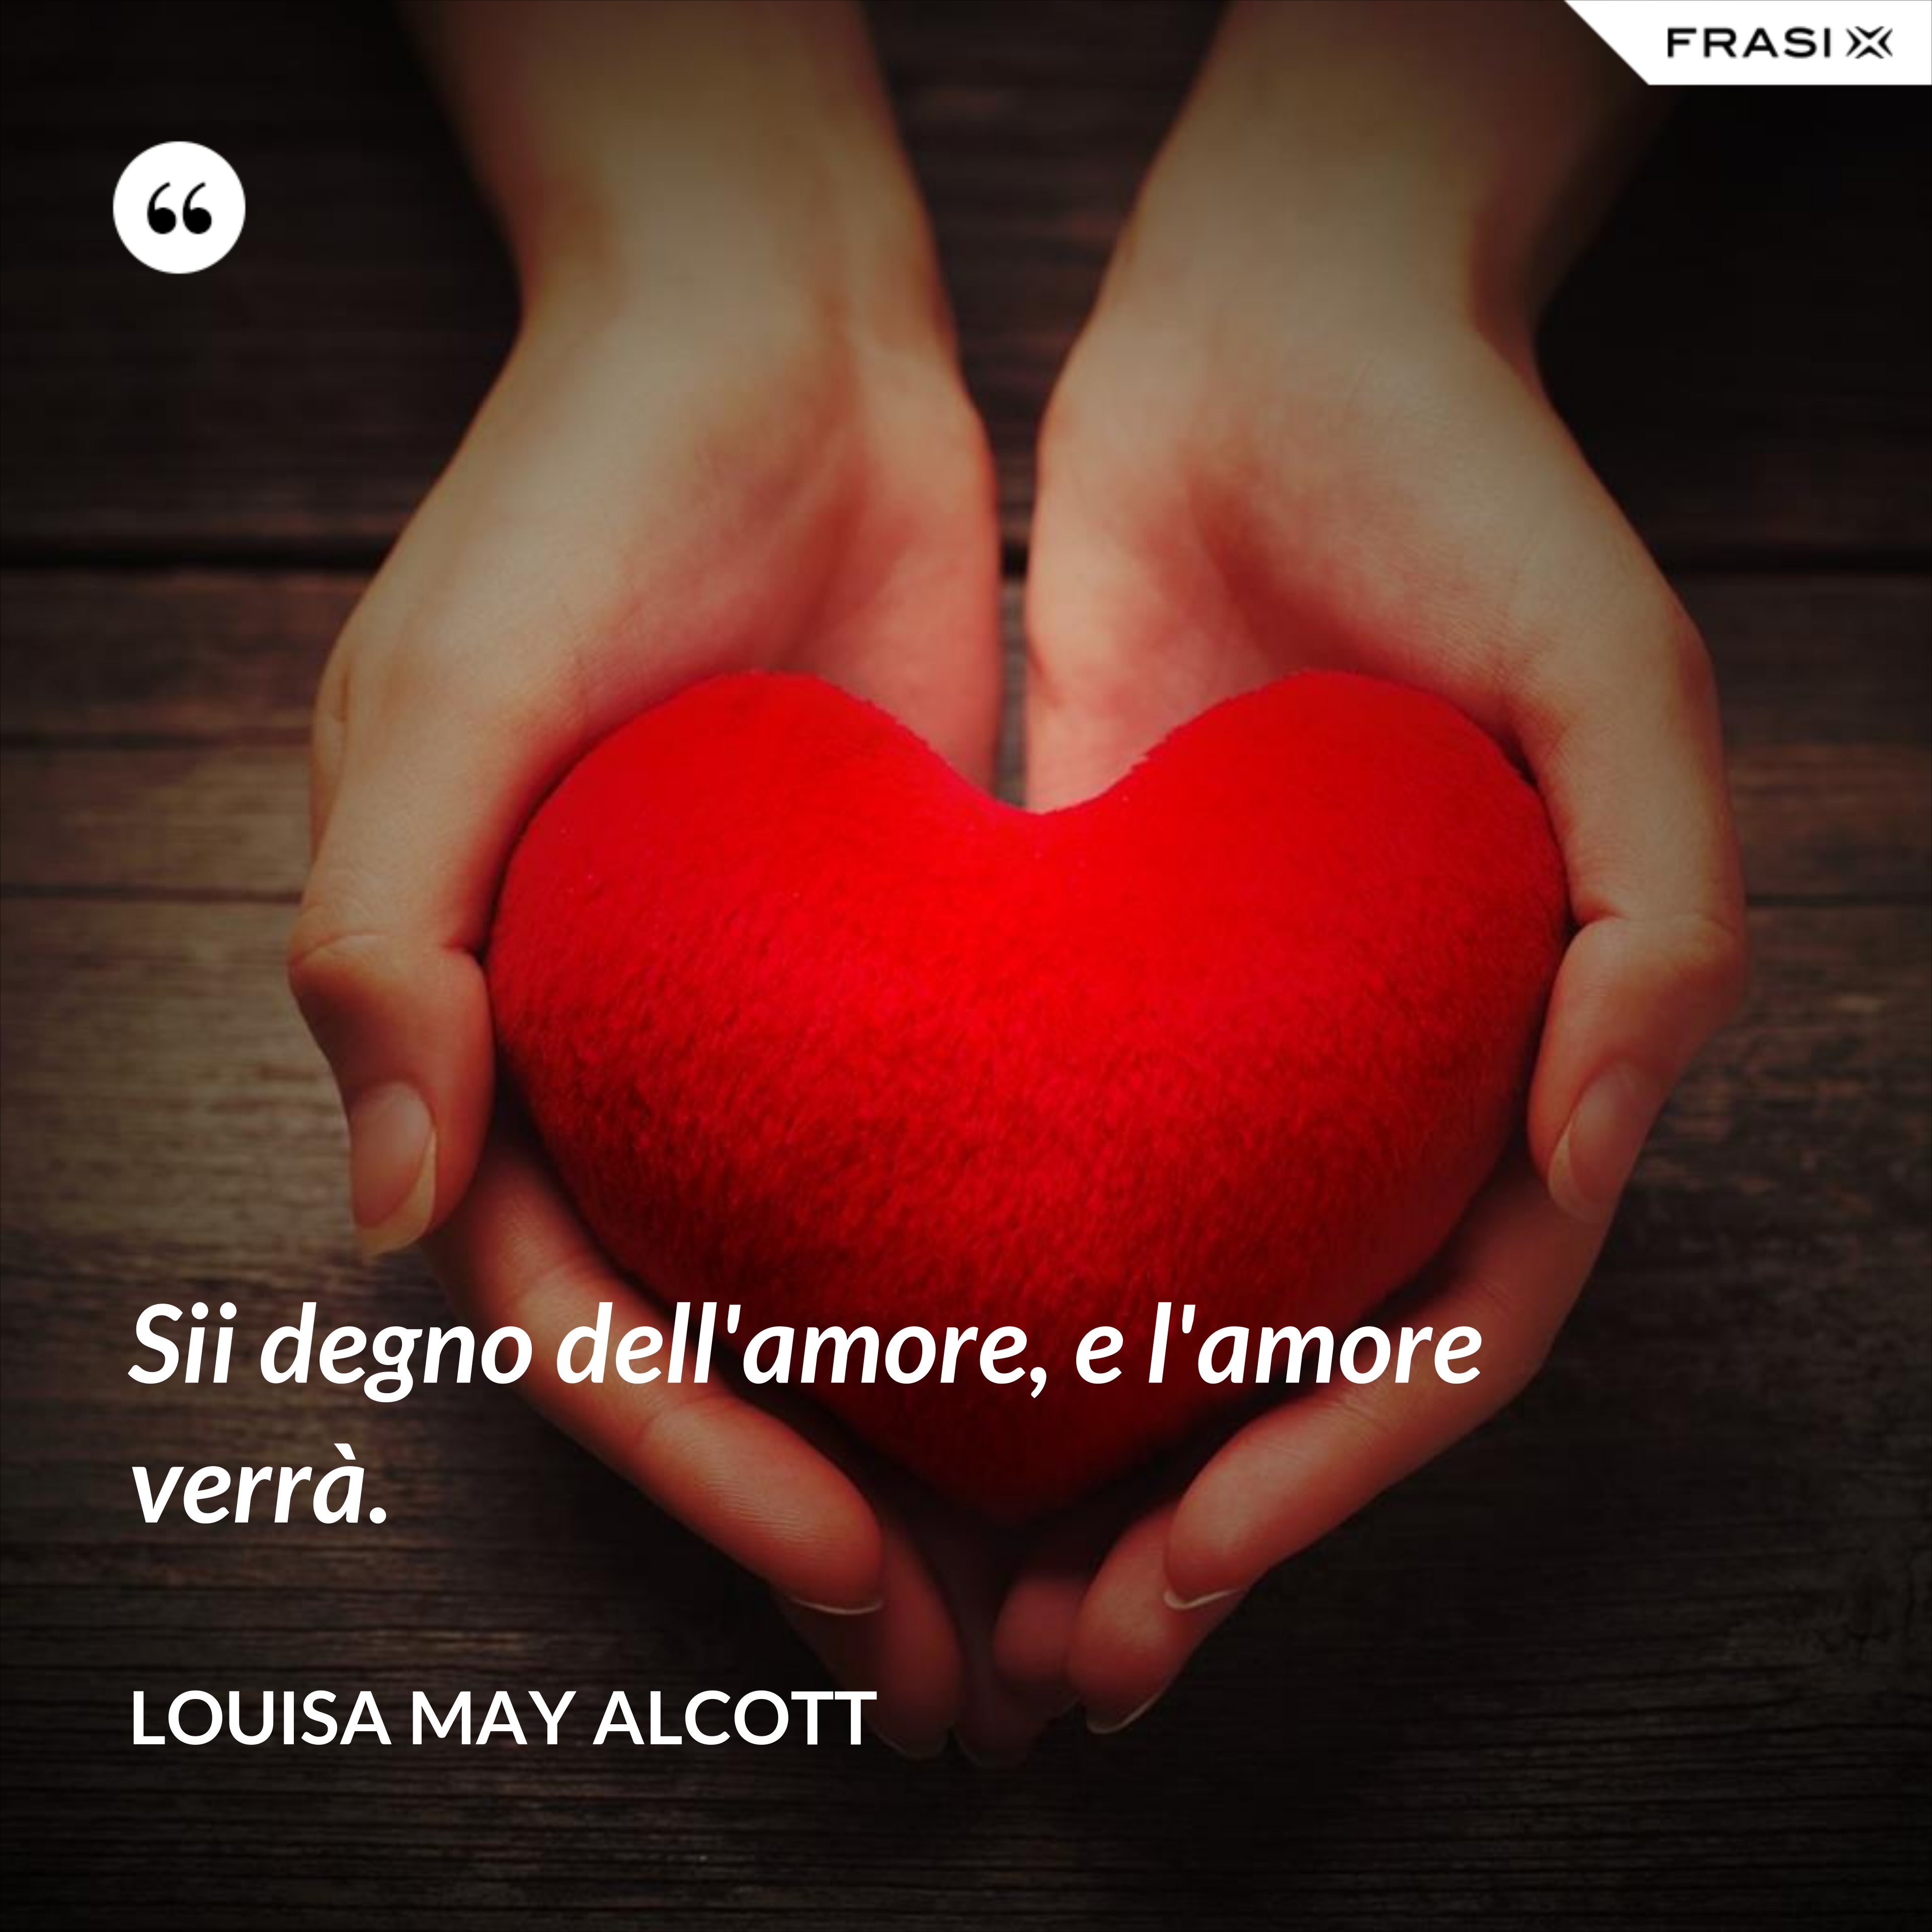 Sii degno dell'amore, e l'amore verrà. - Louisa May Alcott